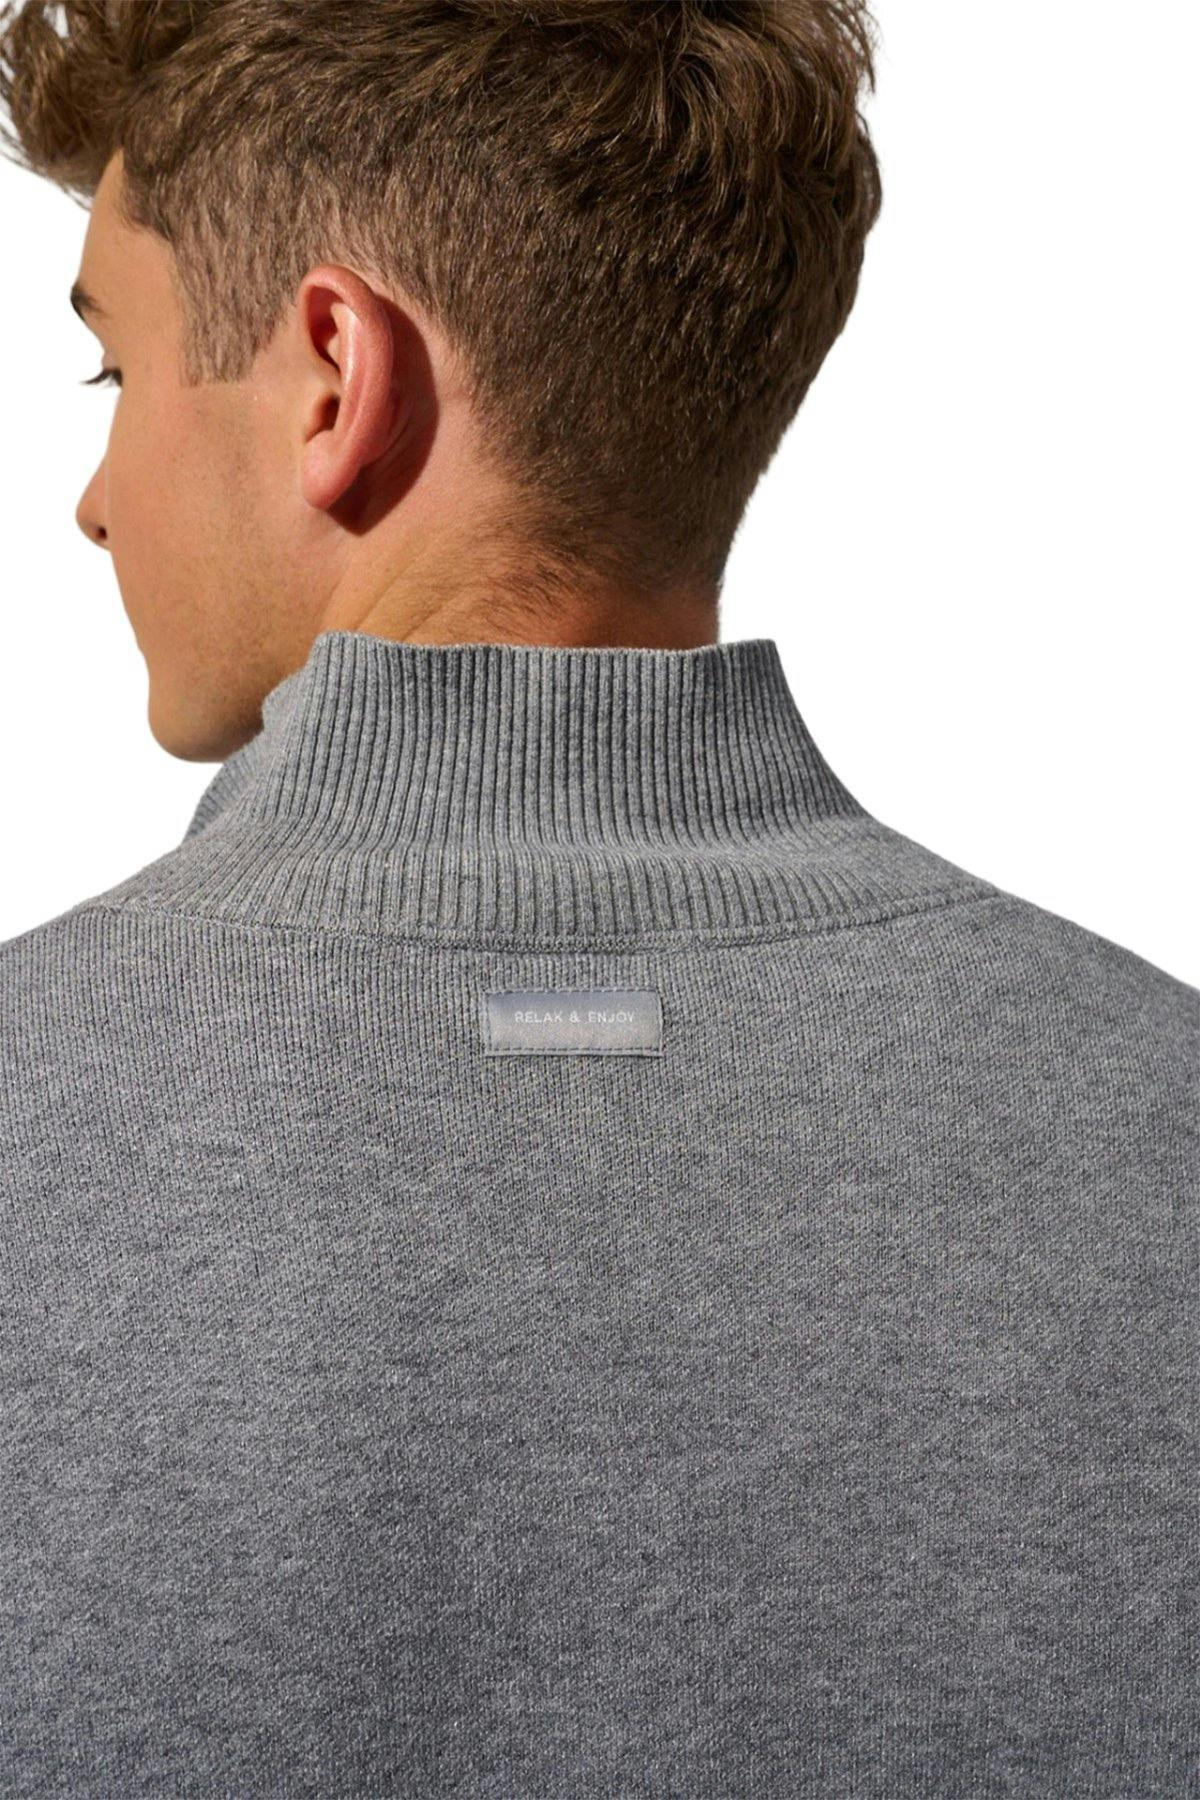 Numéro de l'image de la galerie de produits 5 pour le produit Chemise en tricot - Homme